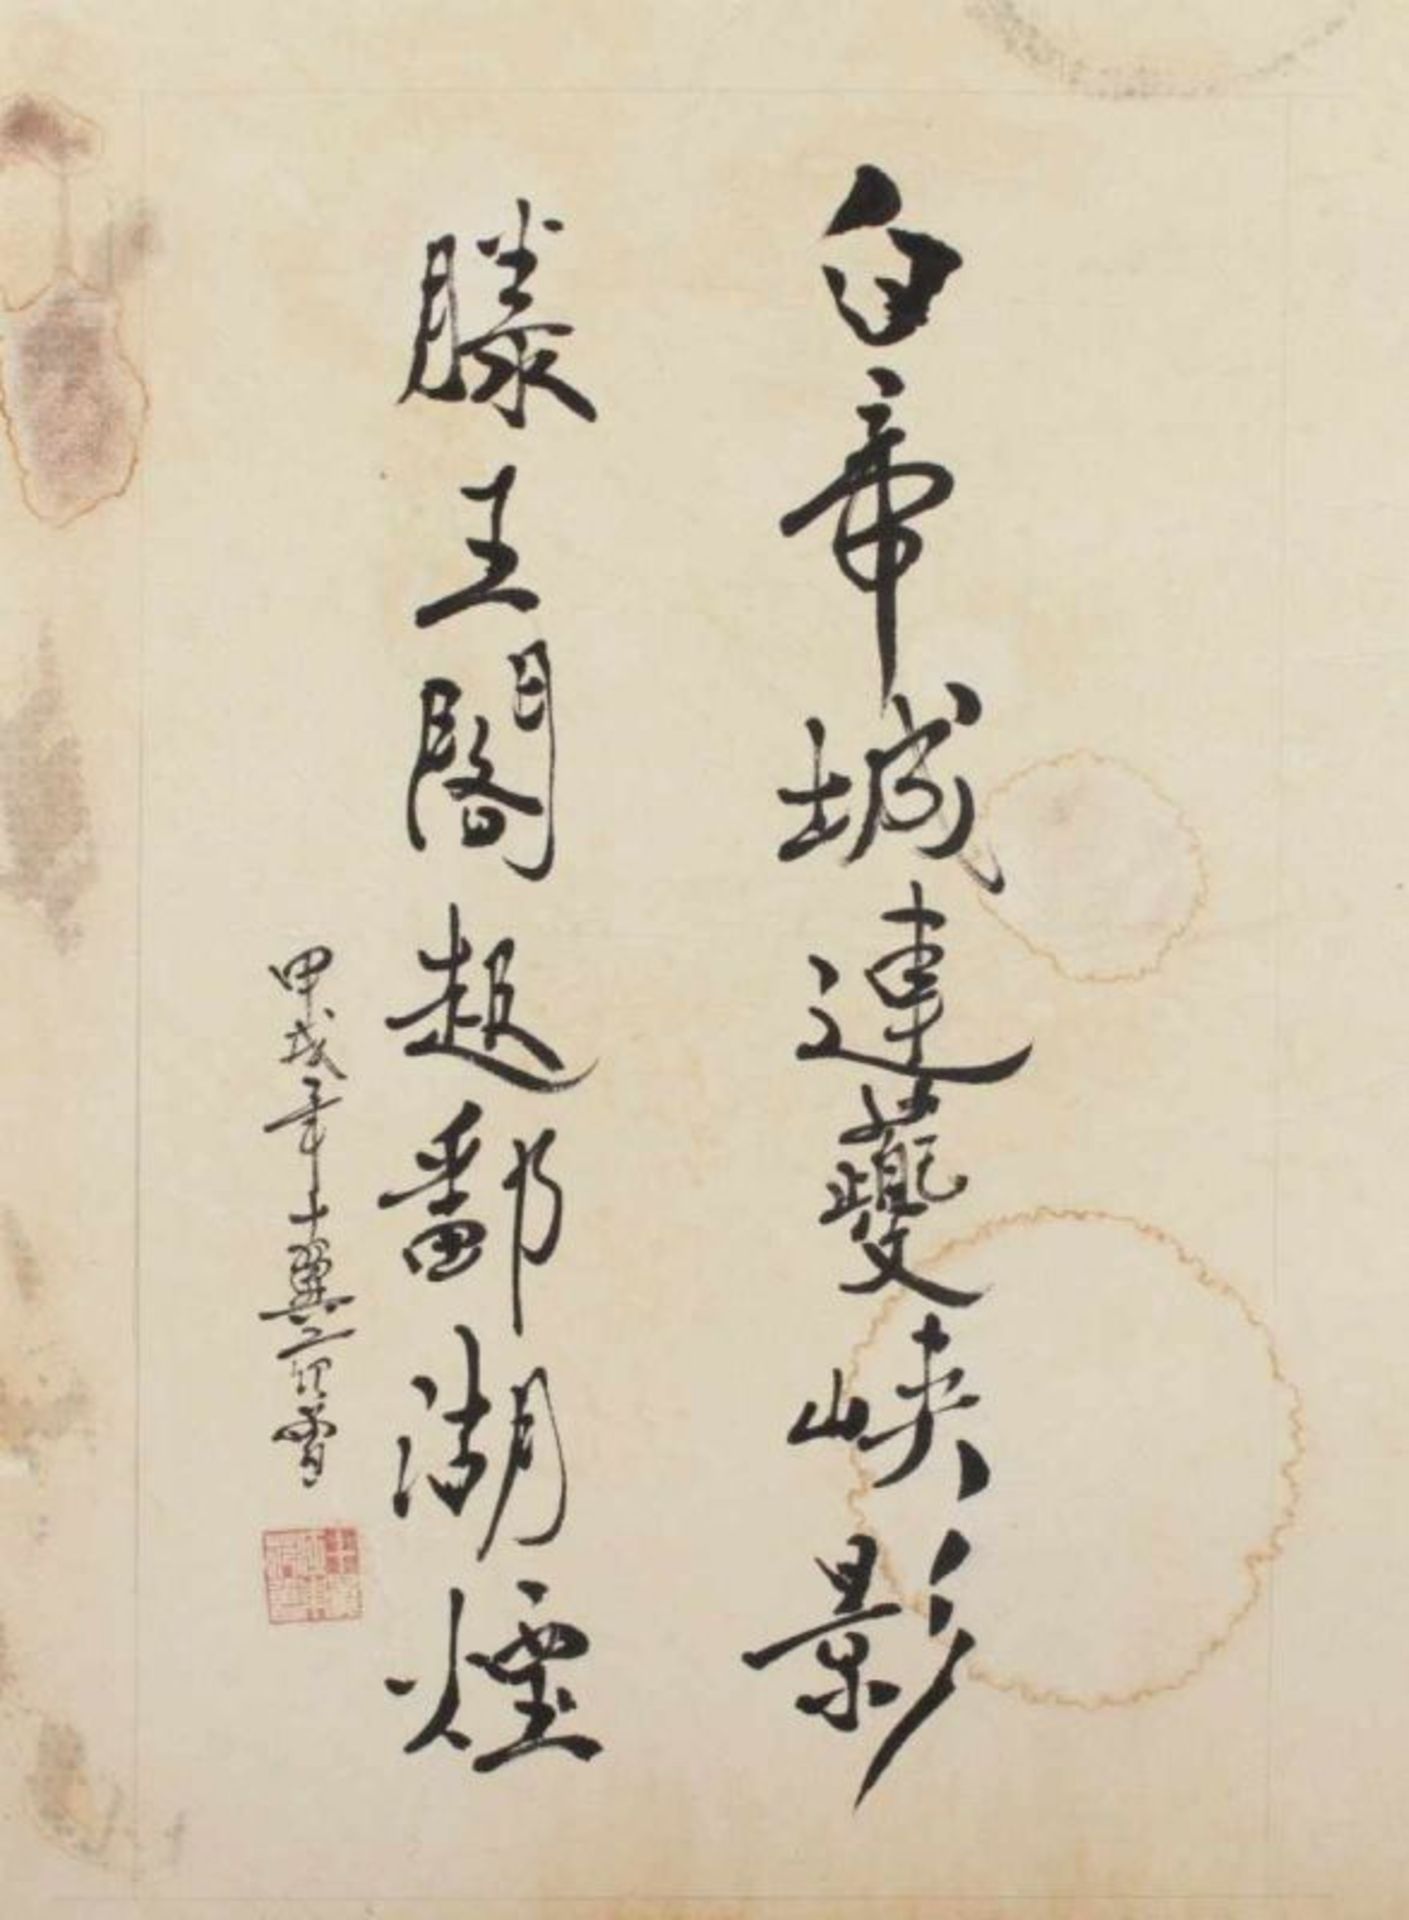 KALLIGRAPHIE, Tusche auf Papier, in der Art von FAN ZENG (geb.1938), 45 x 33, besch. Aufschrift